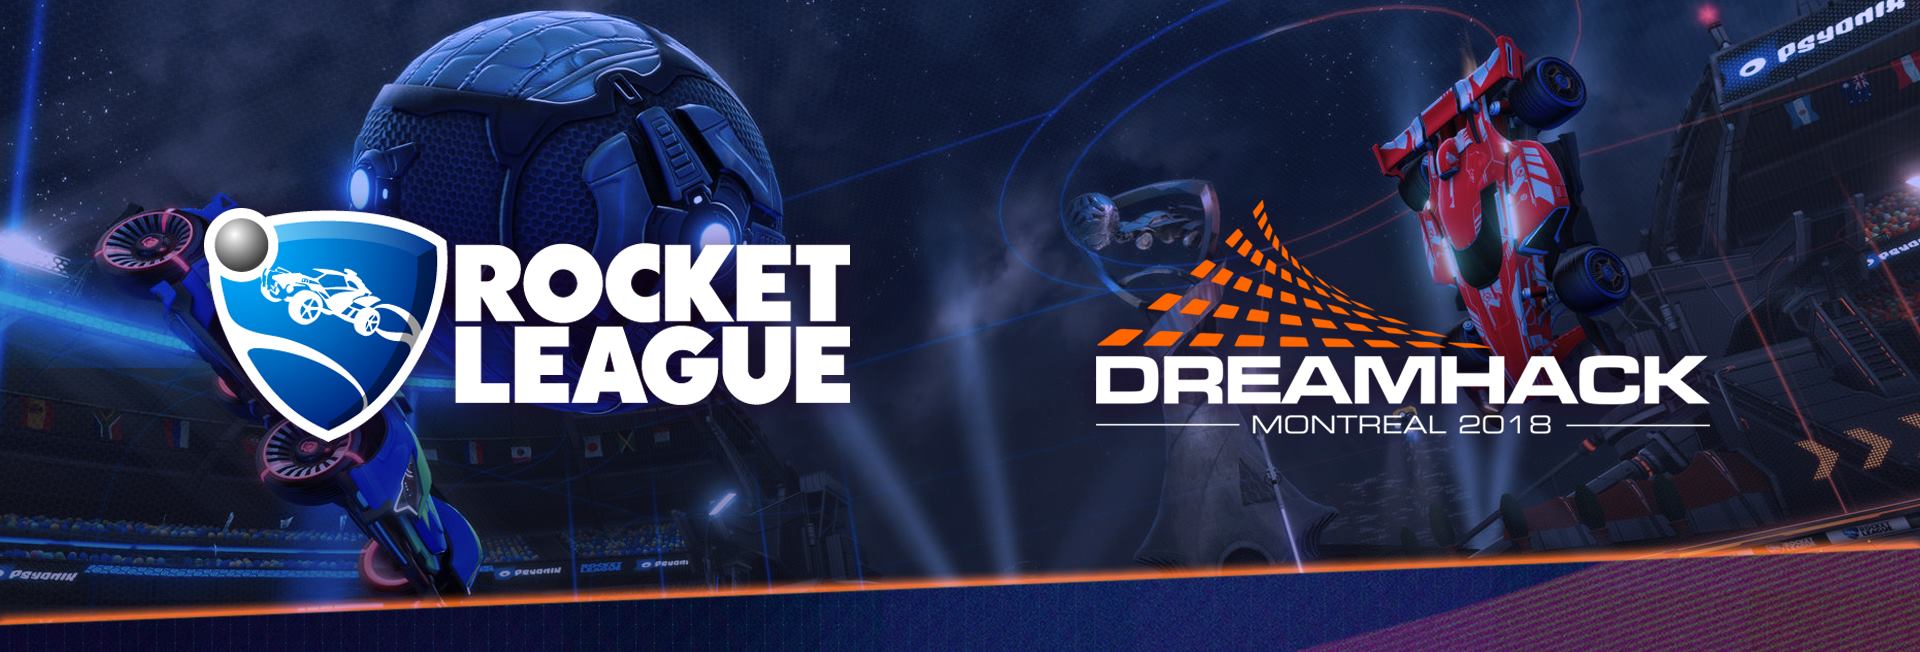 Dreamhack Montreal 2018 - Rocket League